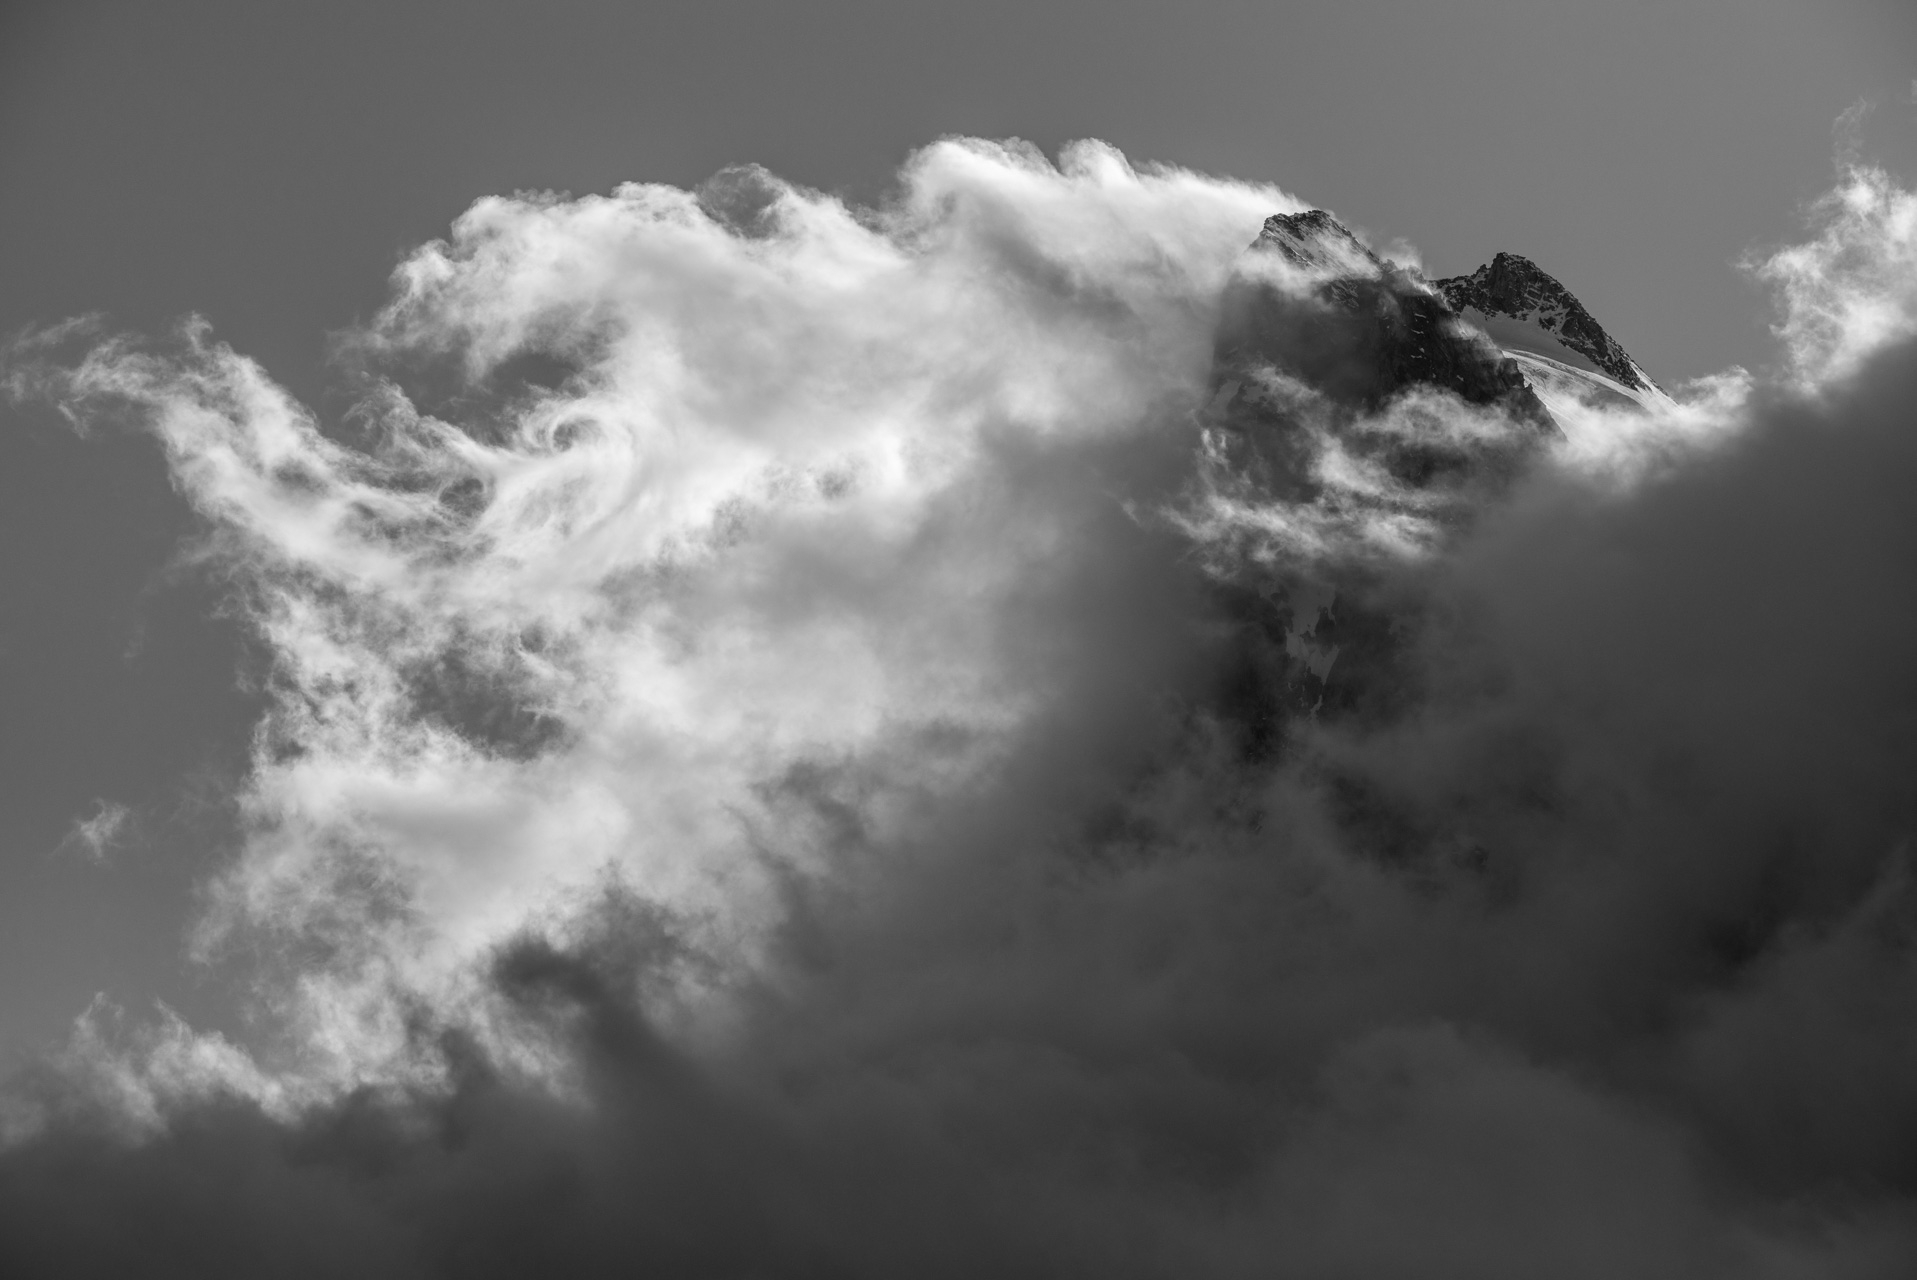 Val d'hérens - Swiss mountains photography - L'évèque